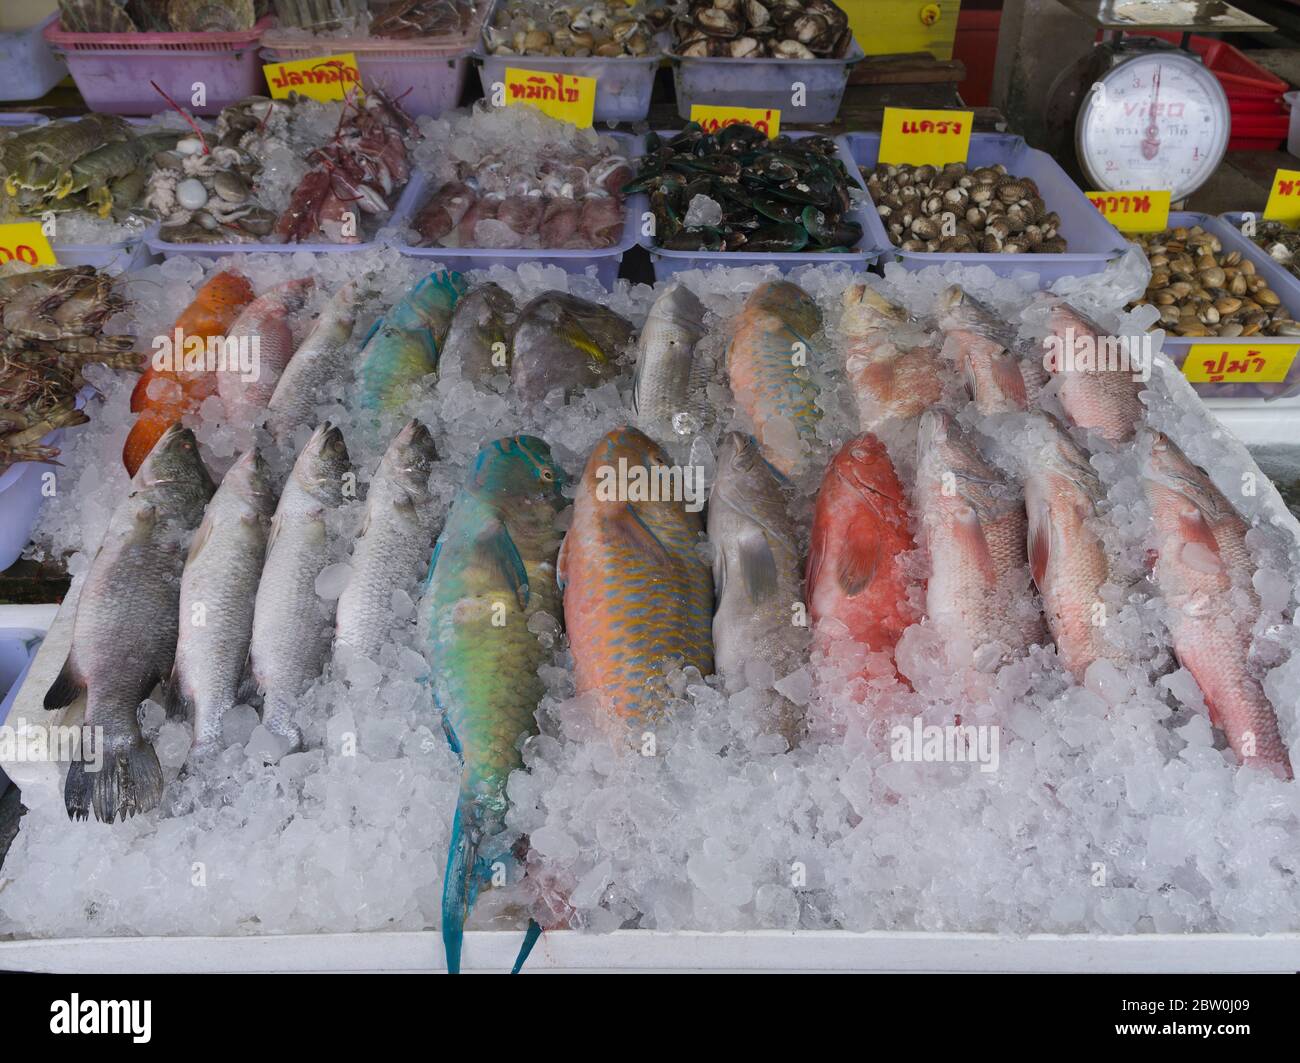 dh Rawai Thai Fish market PHUKET THAÏLANDE les pêcheurs colorés produisent des poissons emballés de glace stalle de fruits de mer marchés poissonniers Banque D'Images